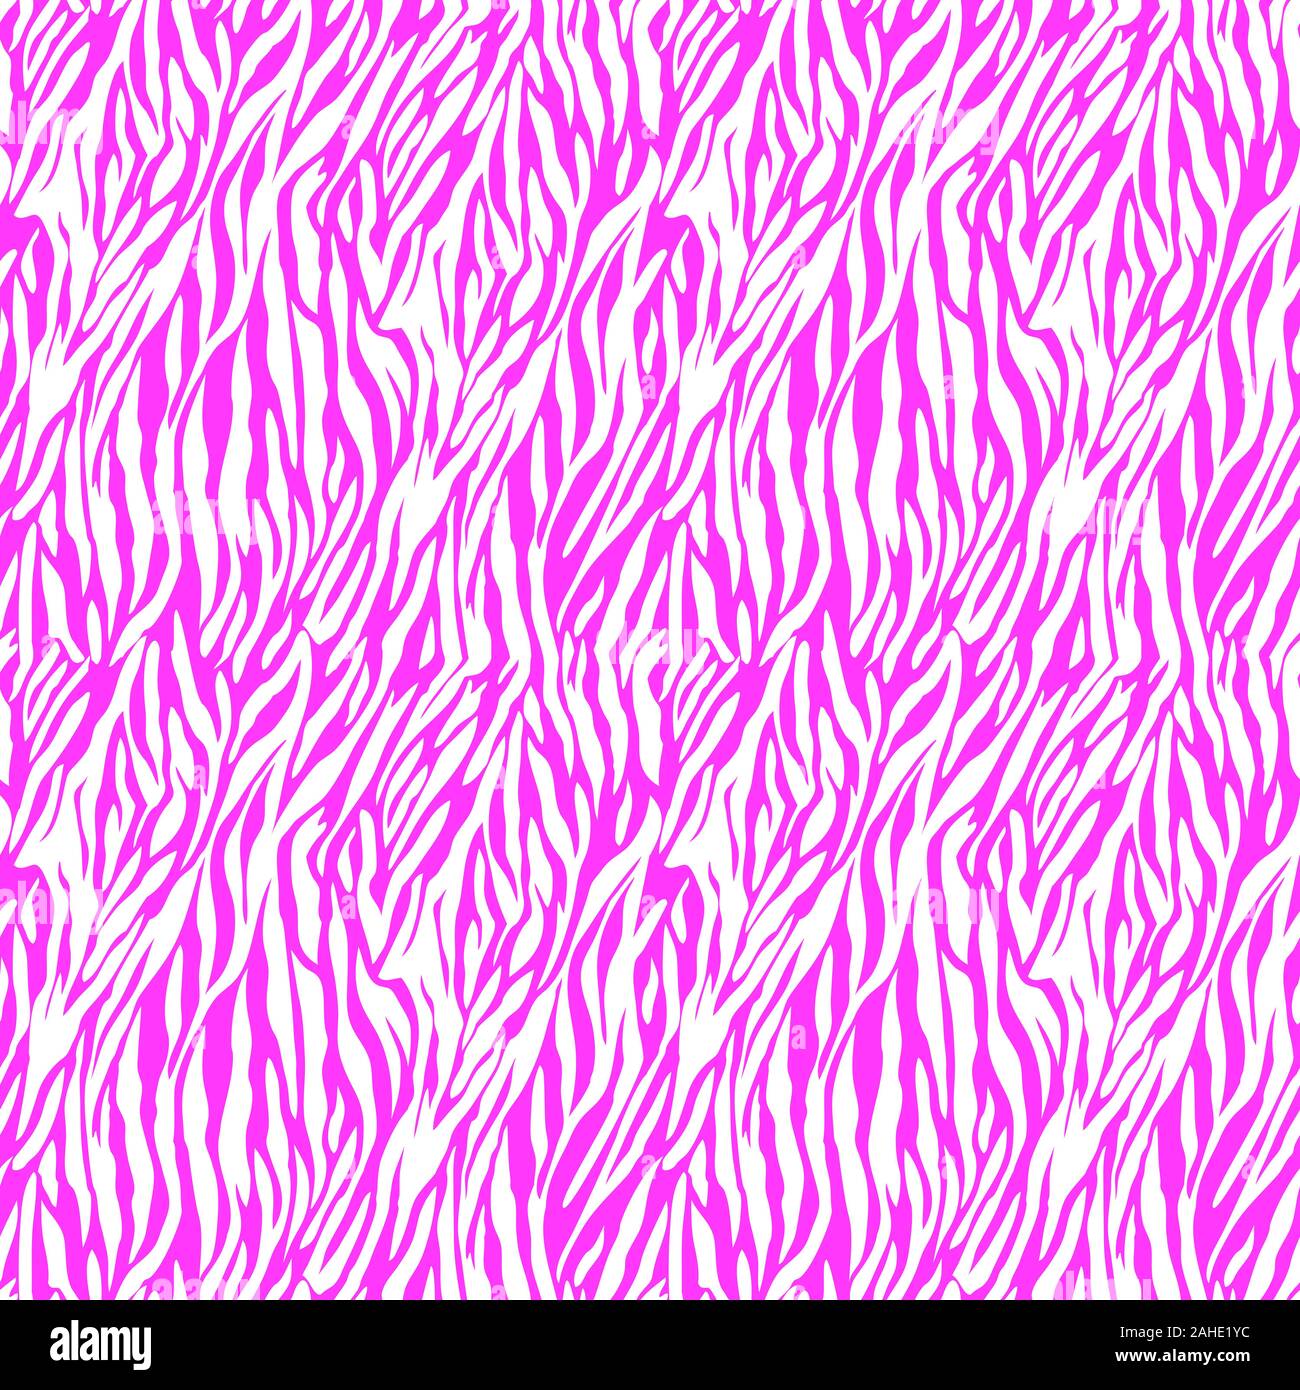 Ligne de Zebra background repeat pattern transparente Banque D'Images